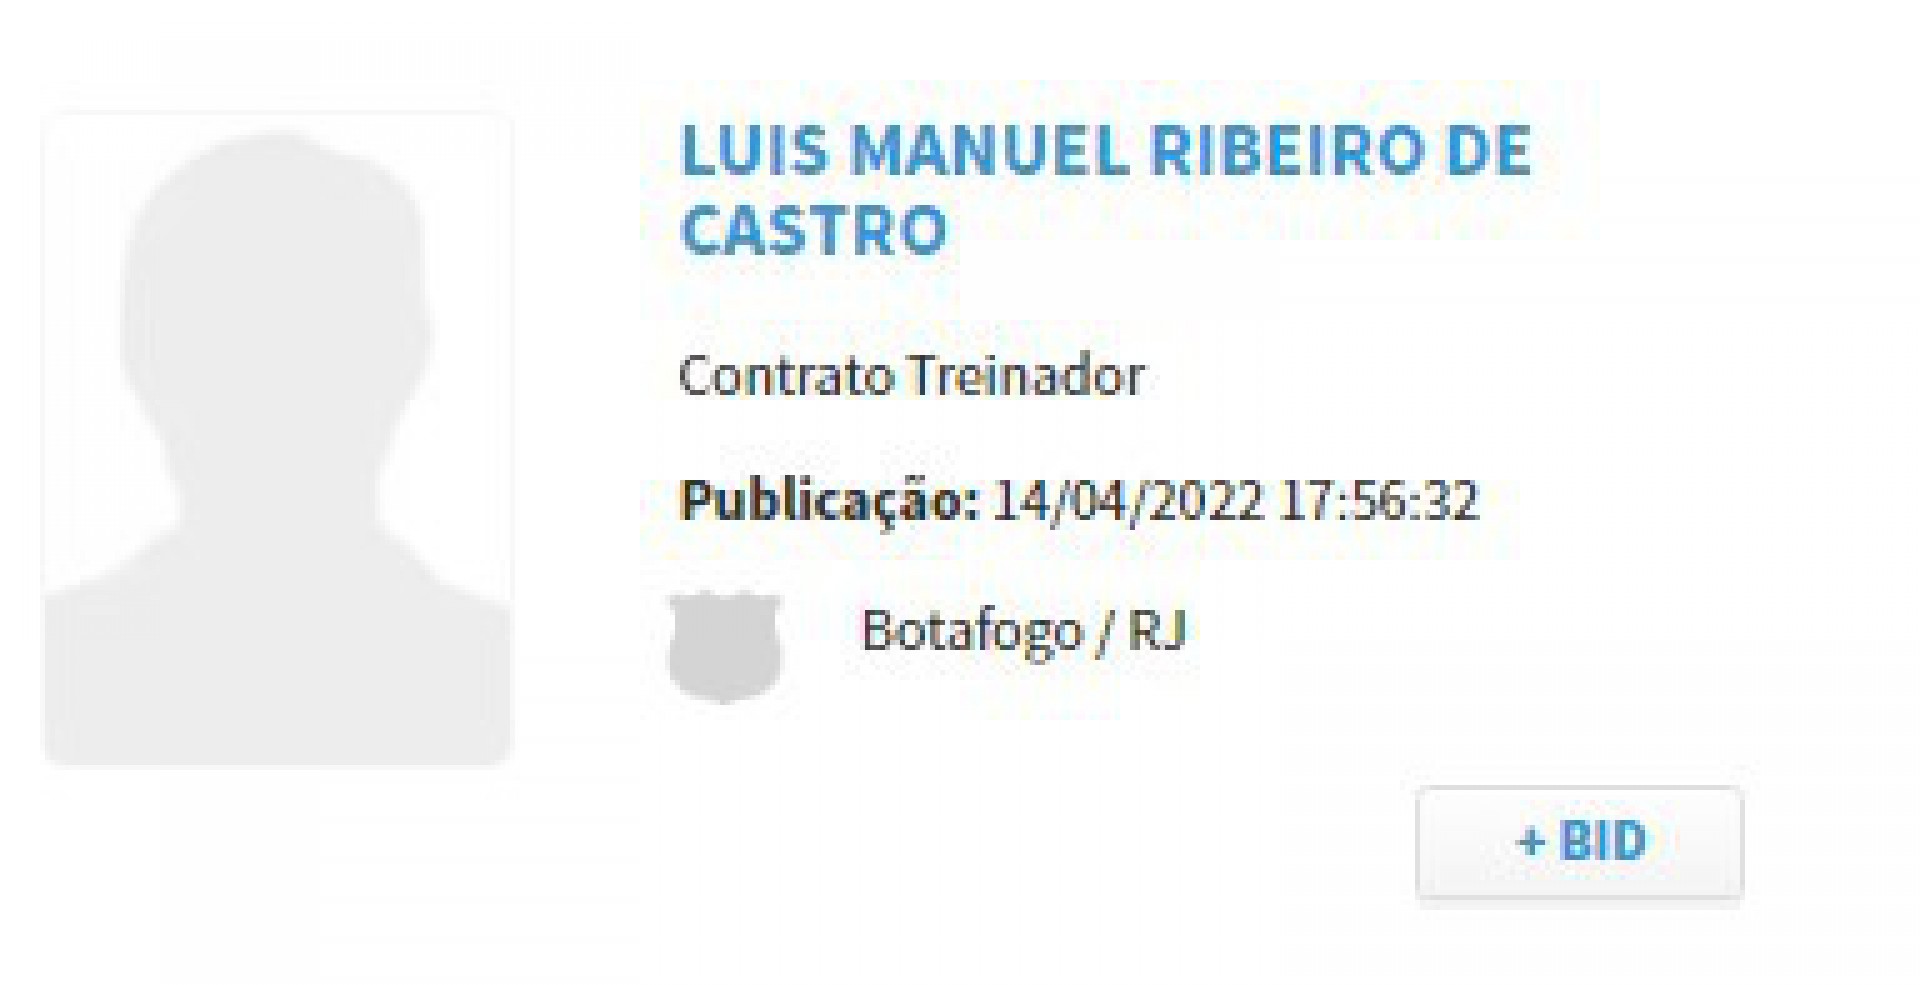 Nome de Luís Castro já foi publicado no Boletim Informativo Diário (BID) da Confederação Brasileira de Futebol (CBF) - Reprodução